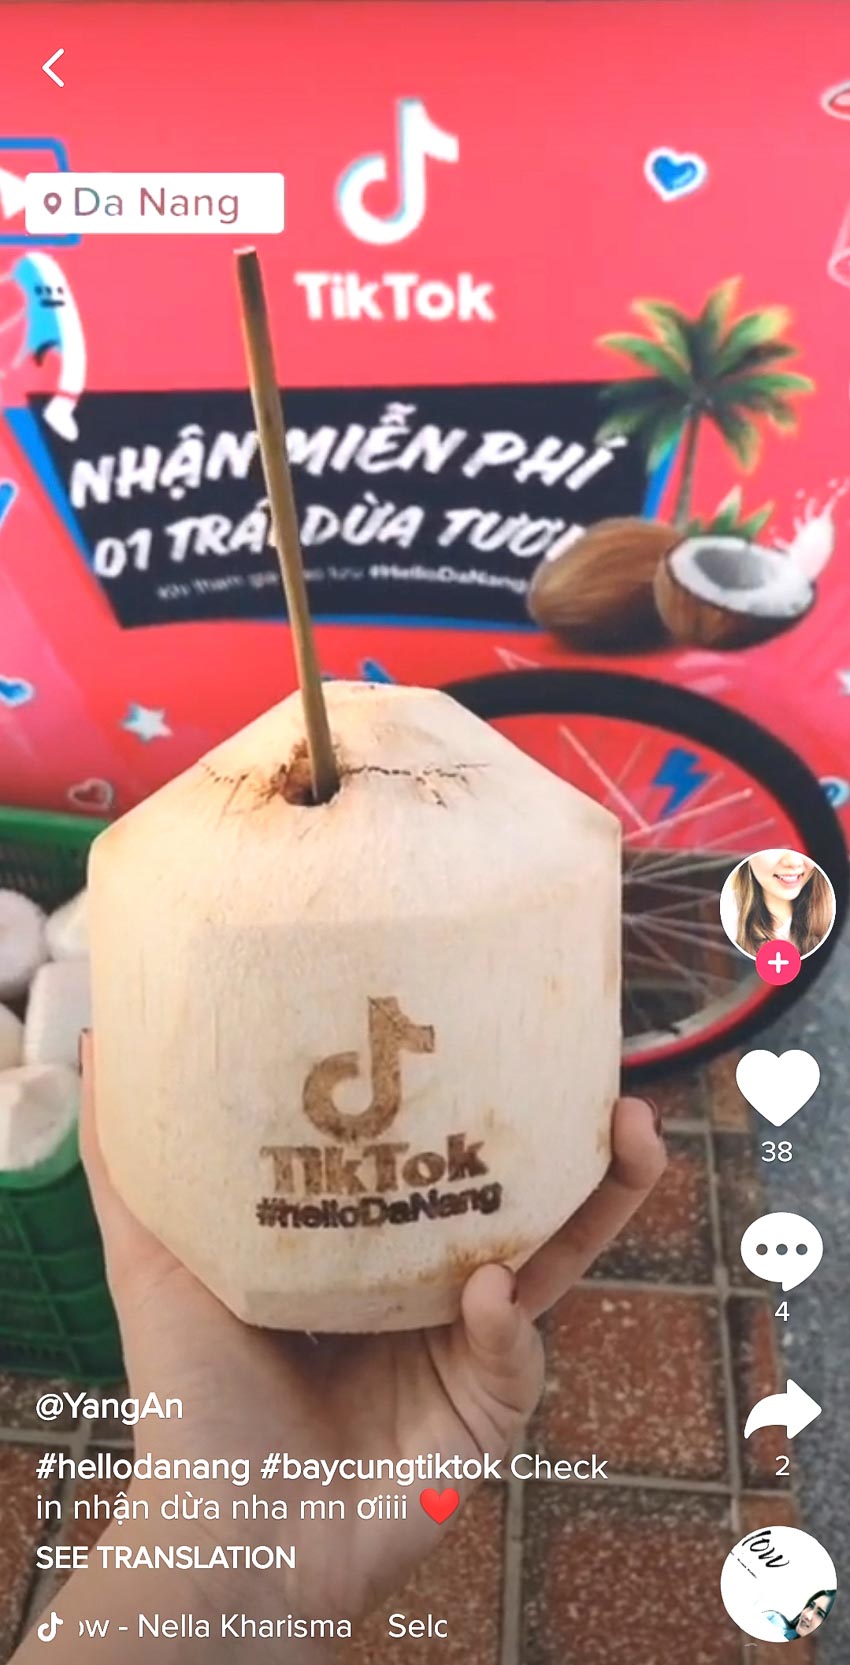 TikTok hợp tác cùng Đà Nẵng mở ra trải nghiệm “du lịch sáng tạo”